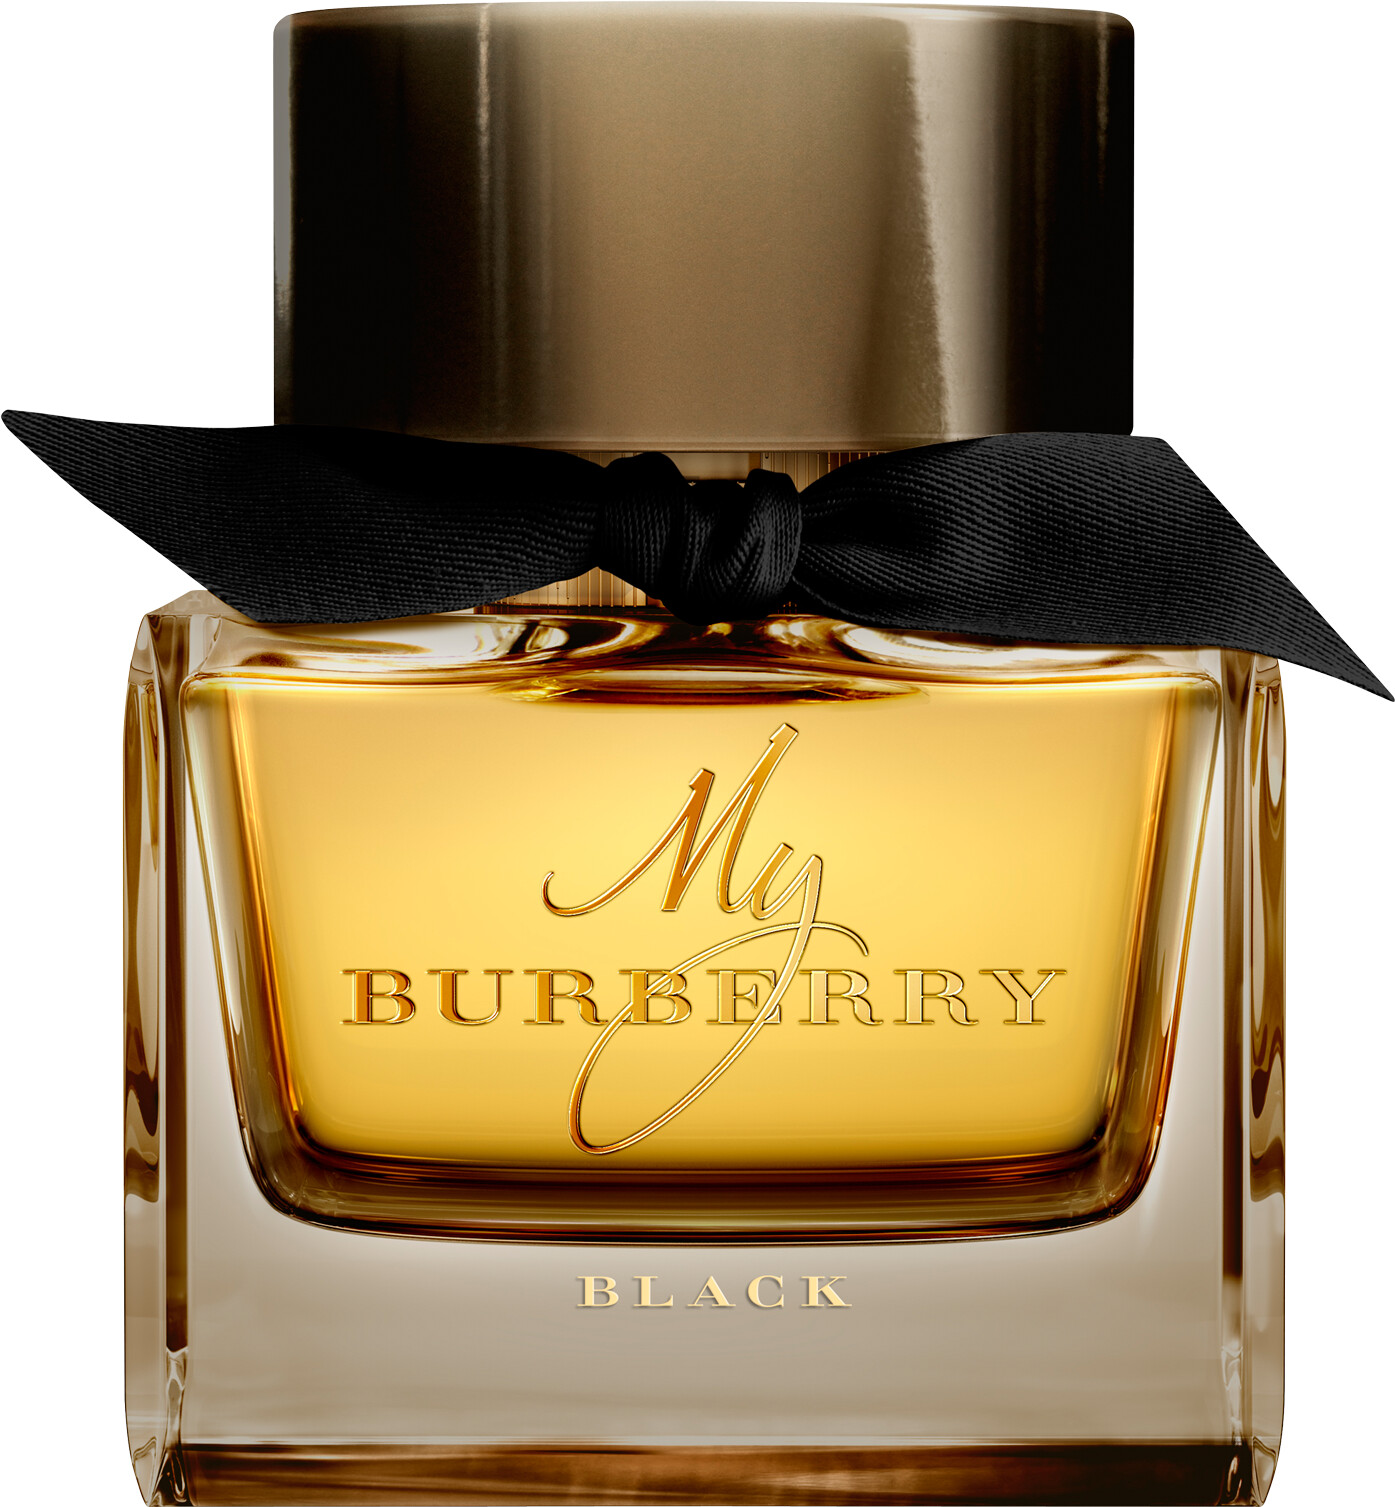 burberry her perfume sephora